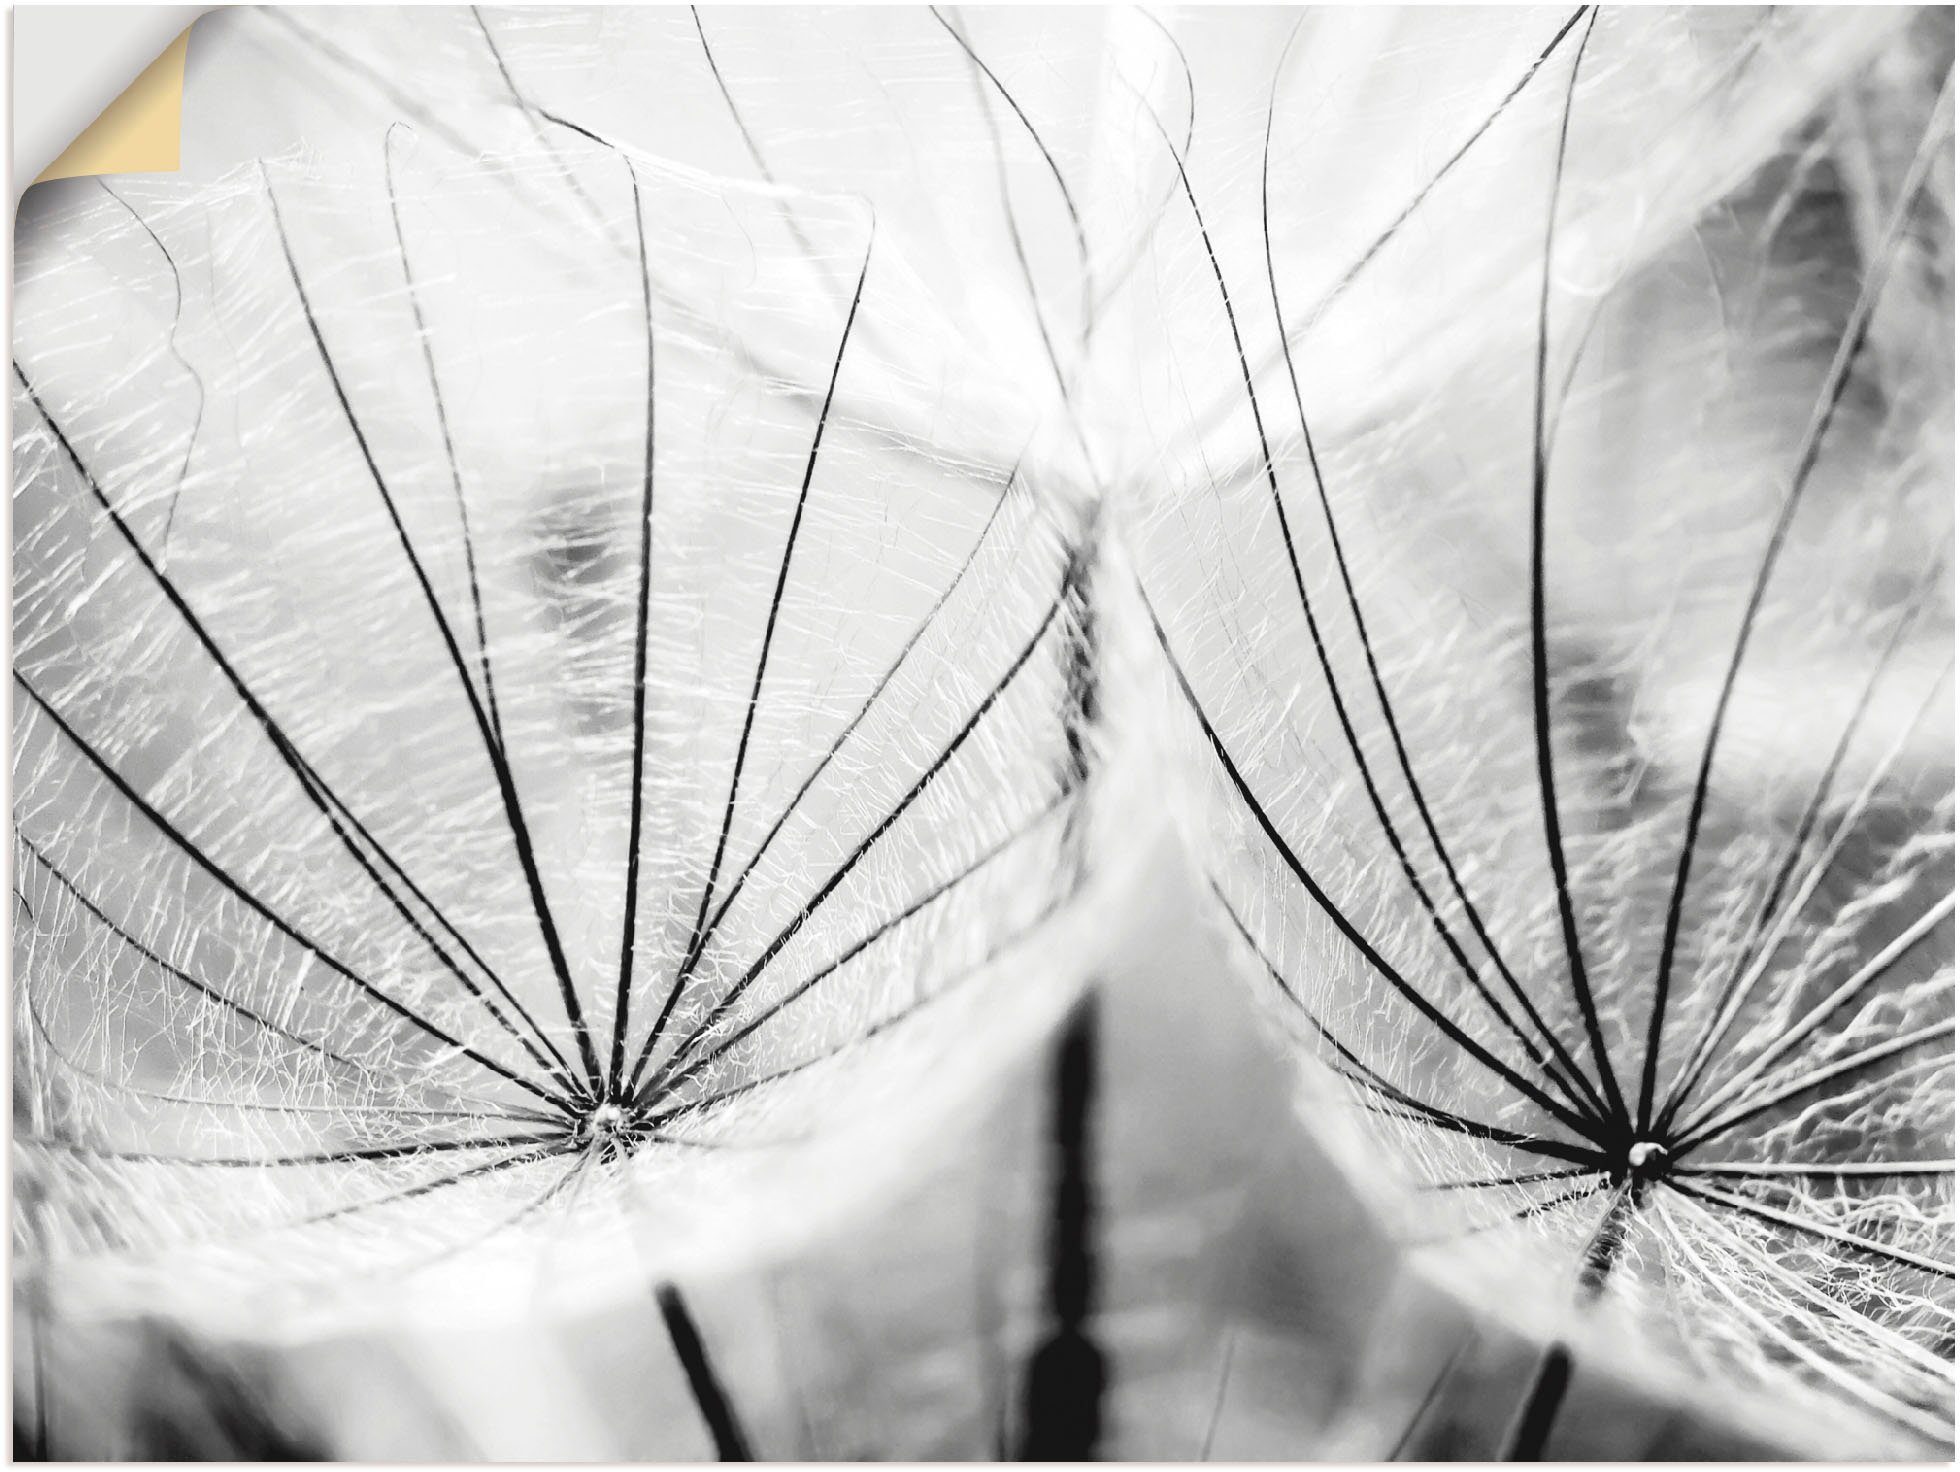 Artland Artprint Pluizenbol in zwart-wit in vele afmetingen & productsoorten - artprint van aluminium / artprint voor buiten, artprint op linnen, poster, muursticker / wandfolie oo